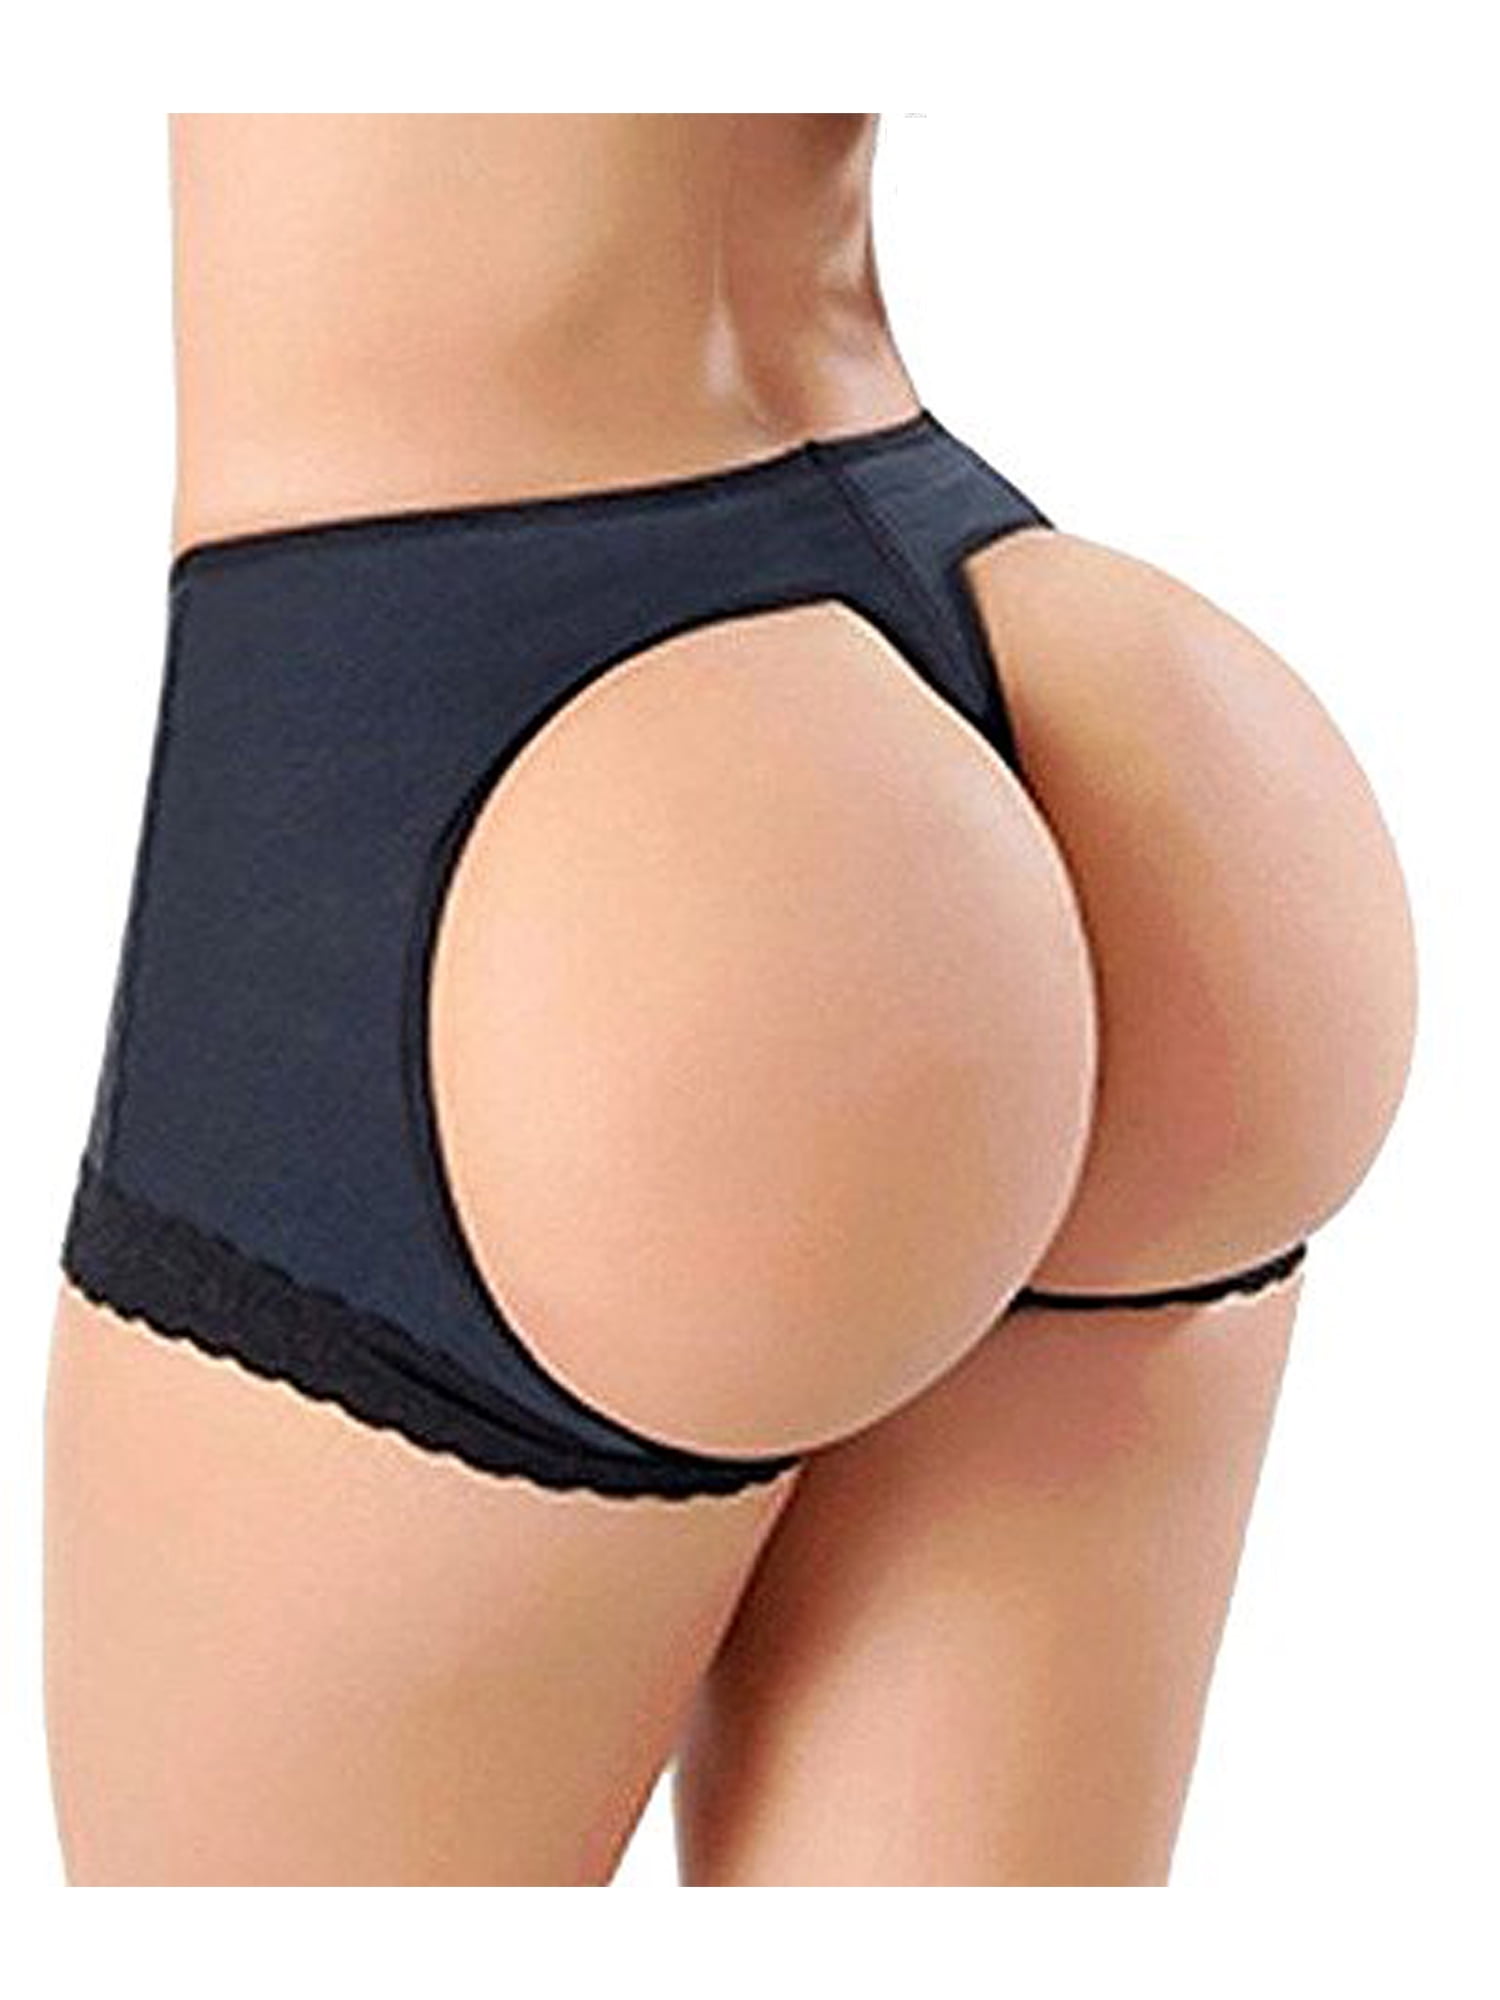 Hot Chick Nude Beach Topless - Women's Butt Lifter Body Shaper Tummy Control Panties Underwear For Women  Butt Hip Enhancer Panties Boy Shorts Tummy Control Panties - Walmart.com